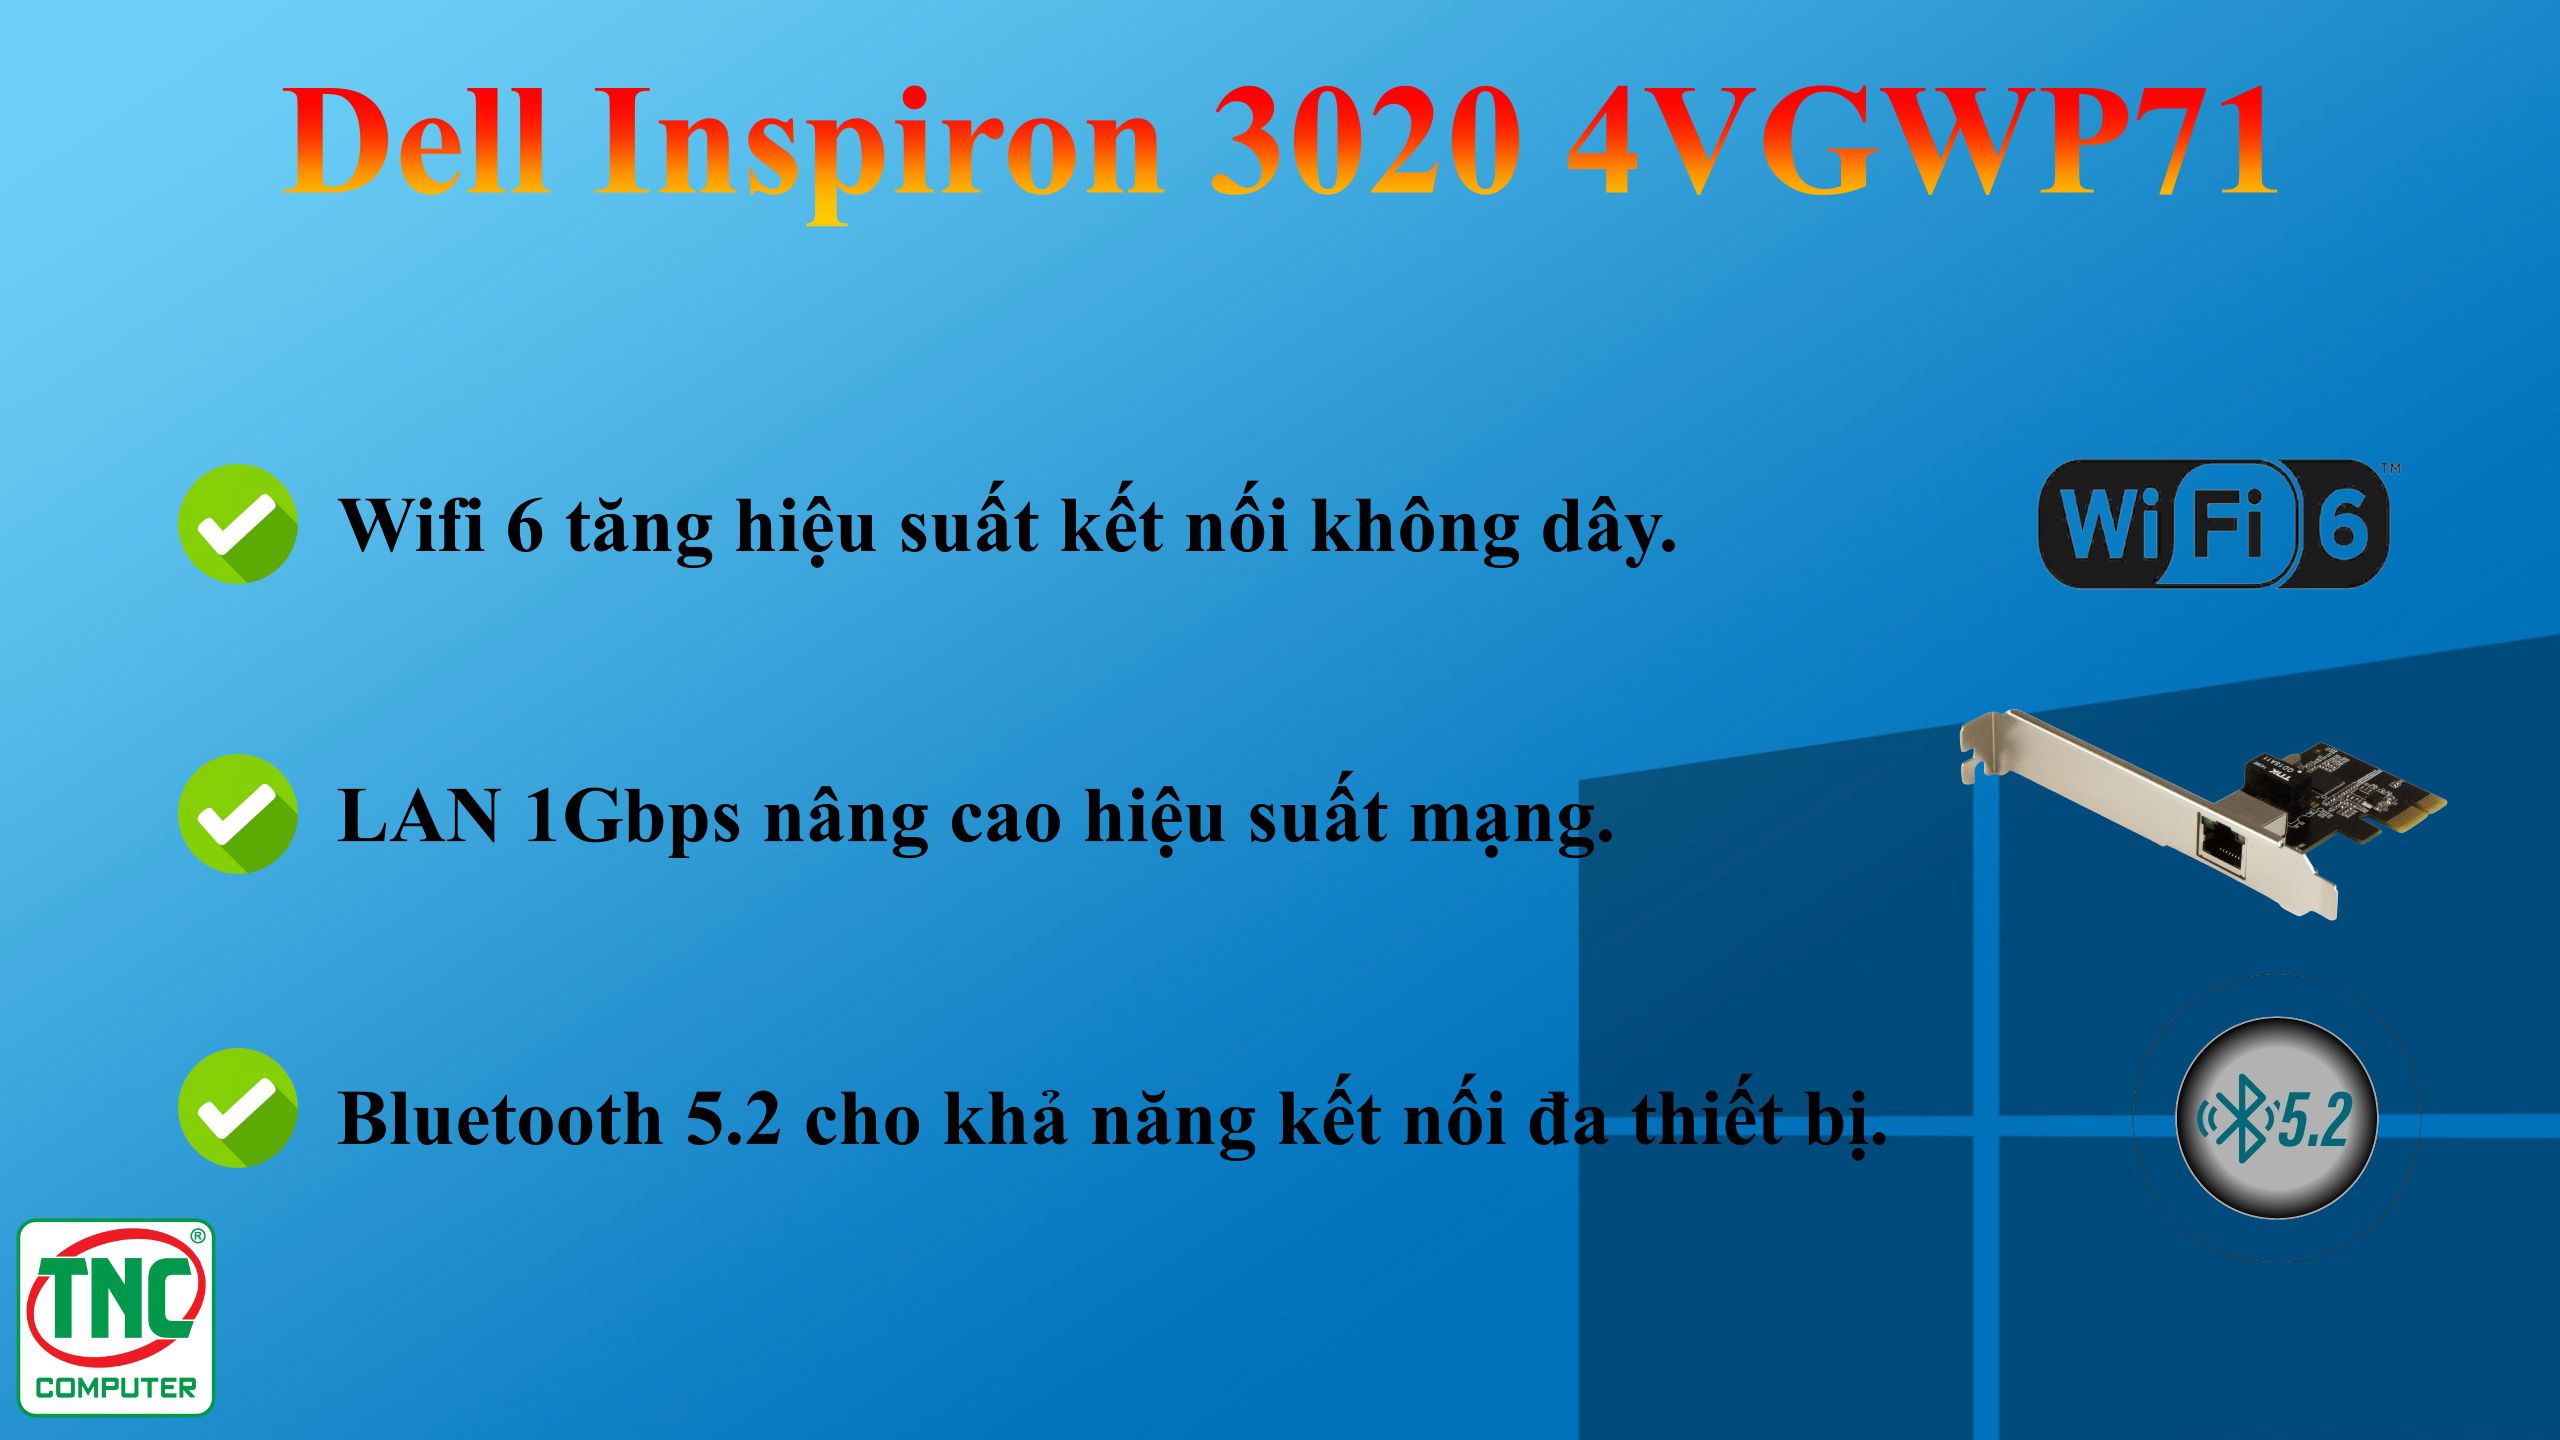 Máy bộ Dell Inspiron 3020 4VGWP71